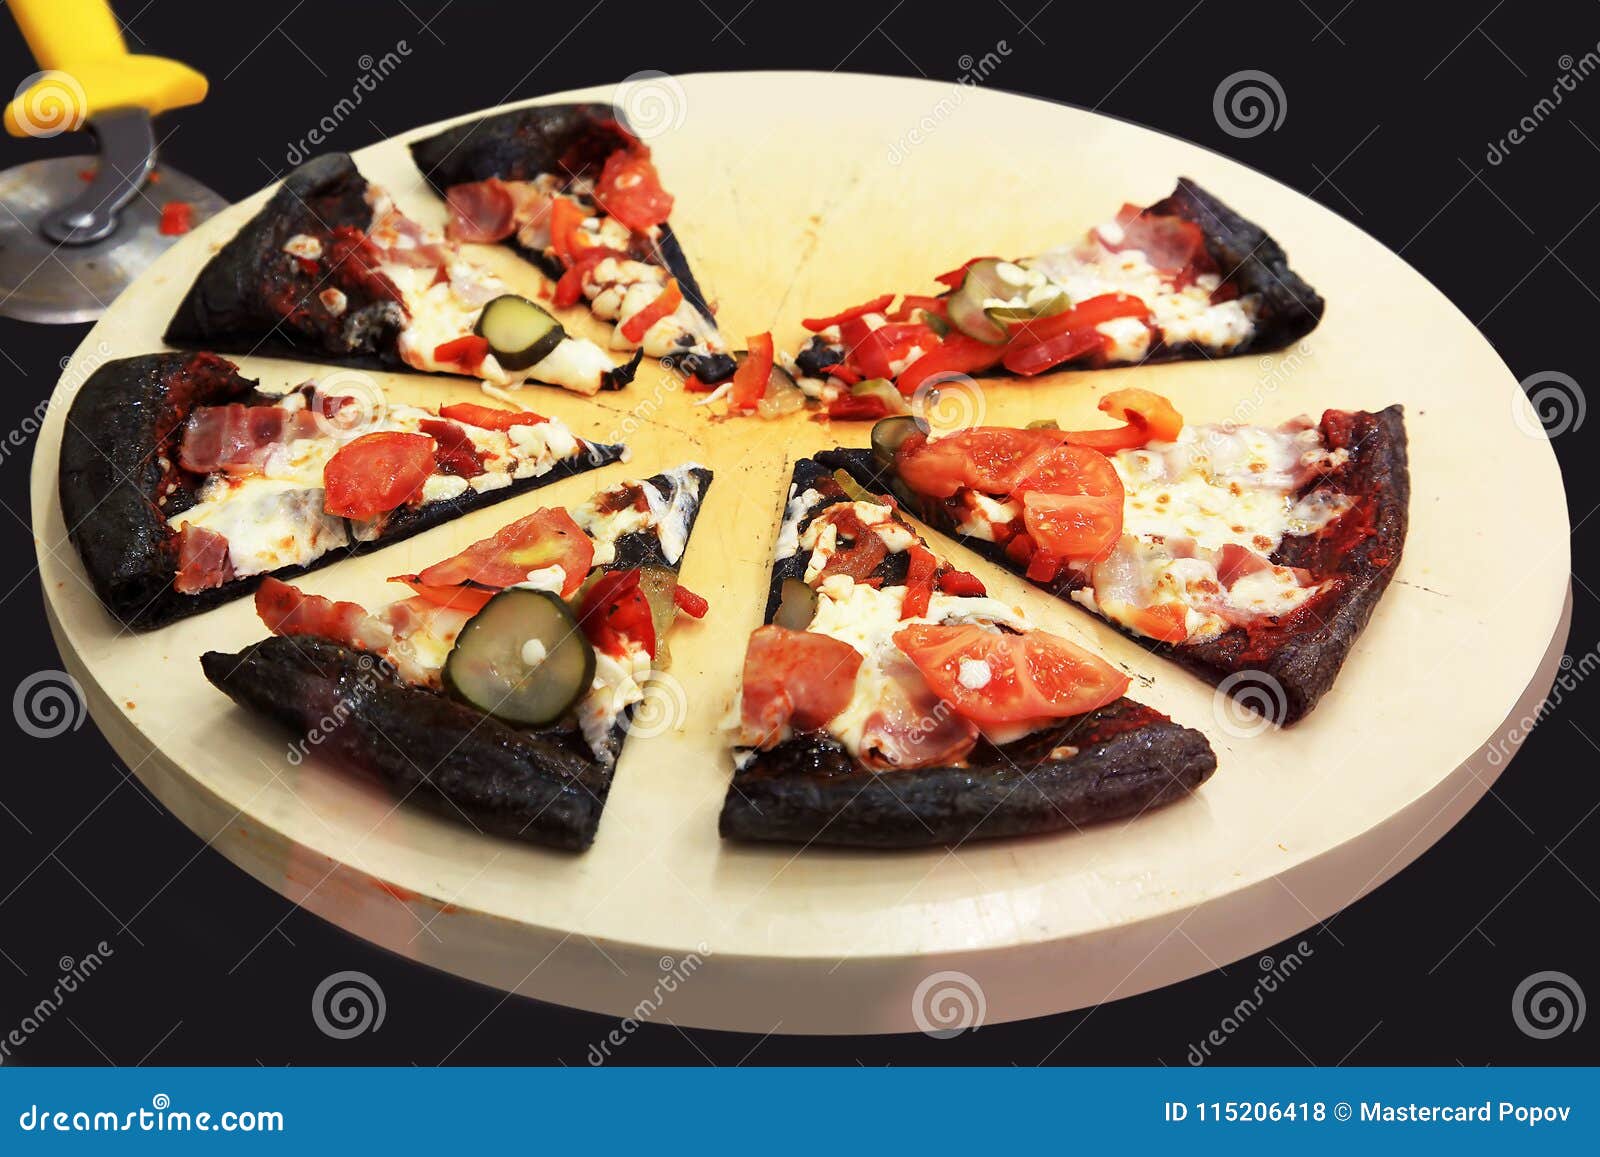 тесто черное на пиццу фото 105